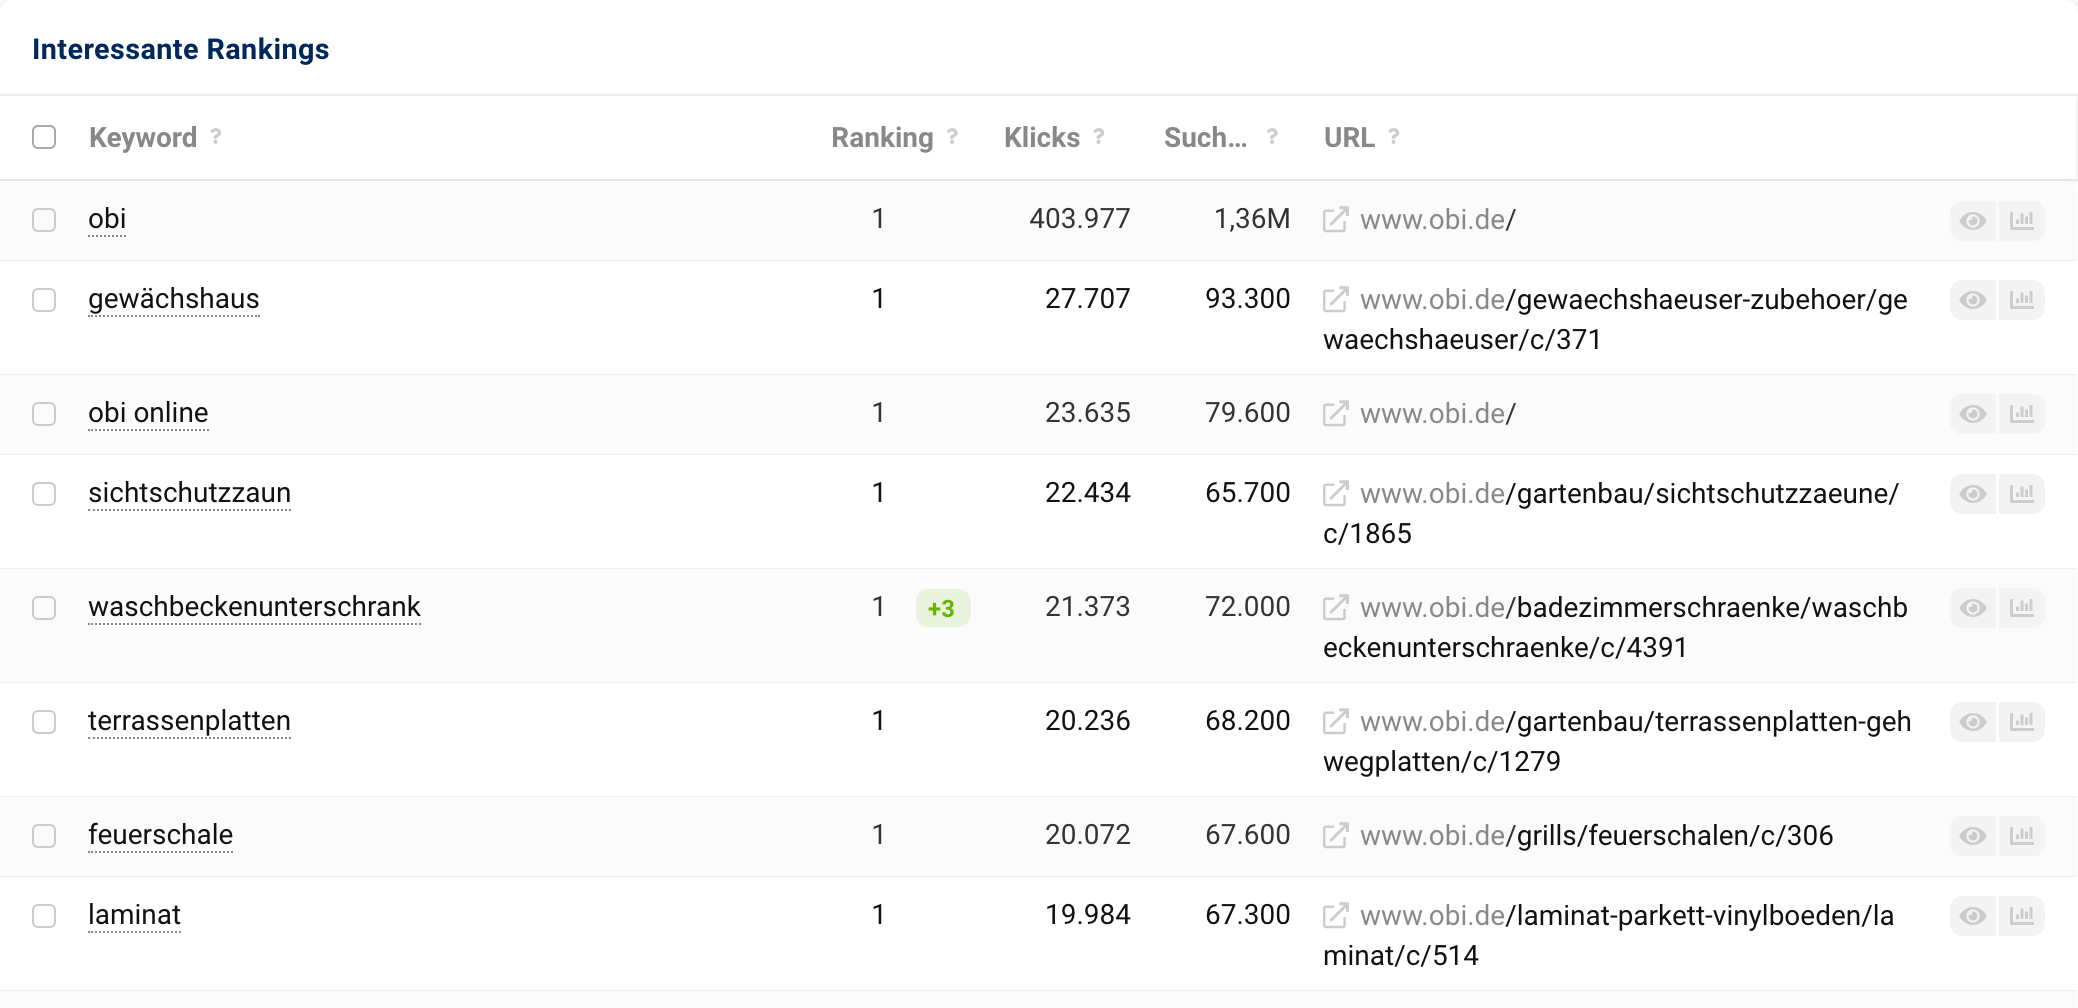 Die Tabelle der interessanten Rankings auf der Übersichtsseite der Domain obi.de. Links in der Tabelle stehen die Keywords, auf der rechten Seite sind die URLs der Domain aufgelistet, die aktuell für die jeweiligen Keywords ranken.